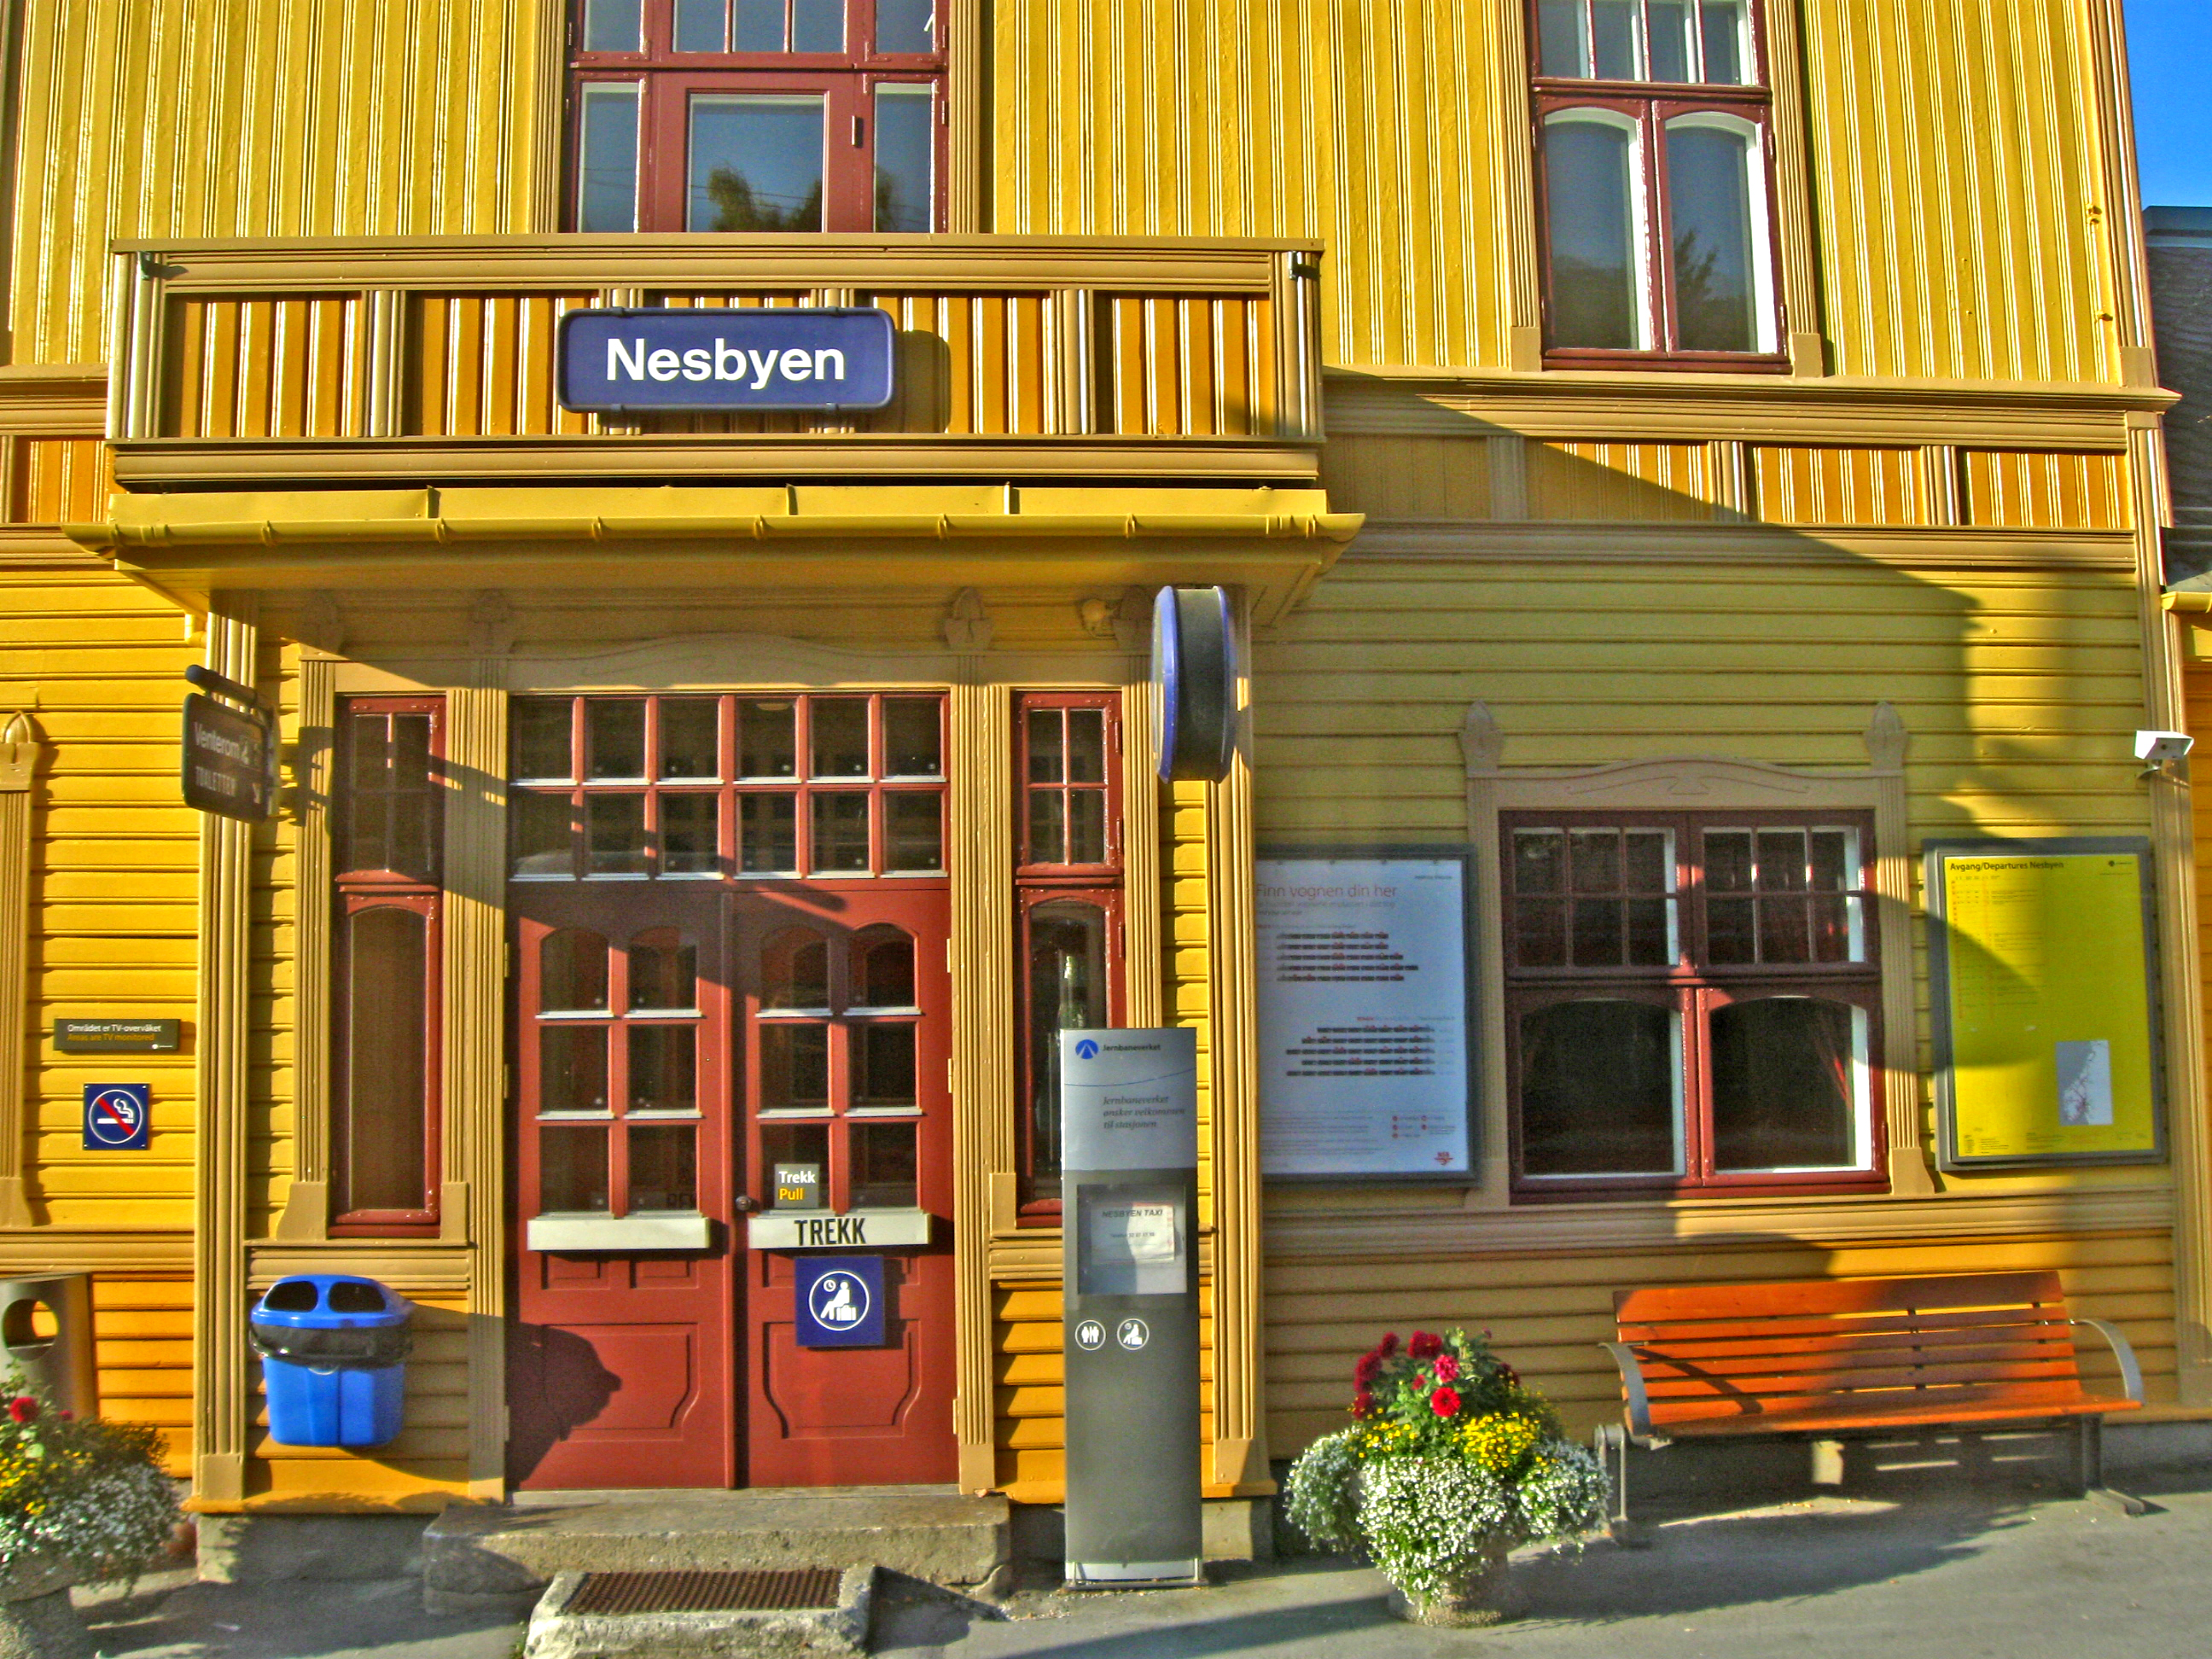 Norwegian Train Station